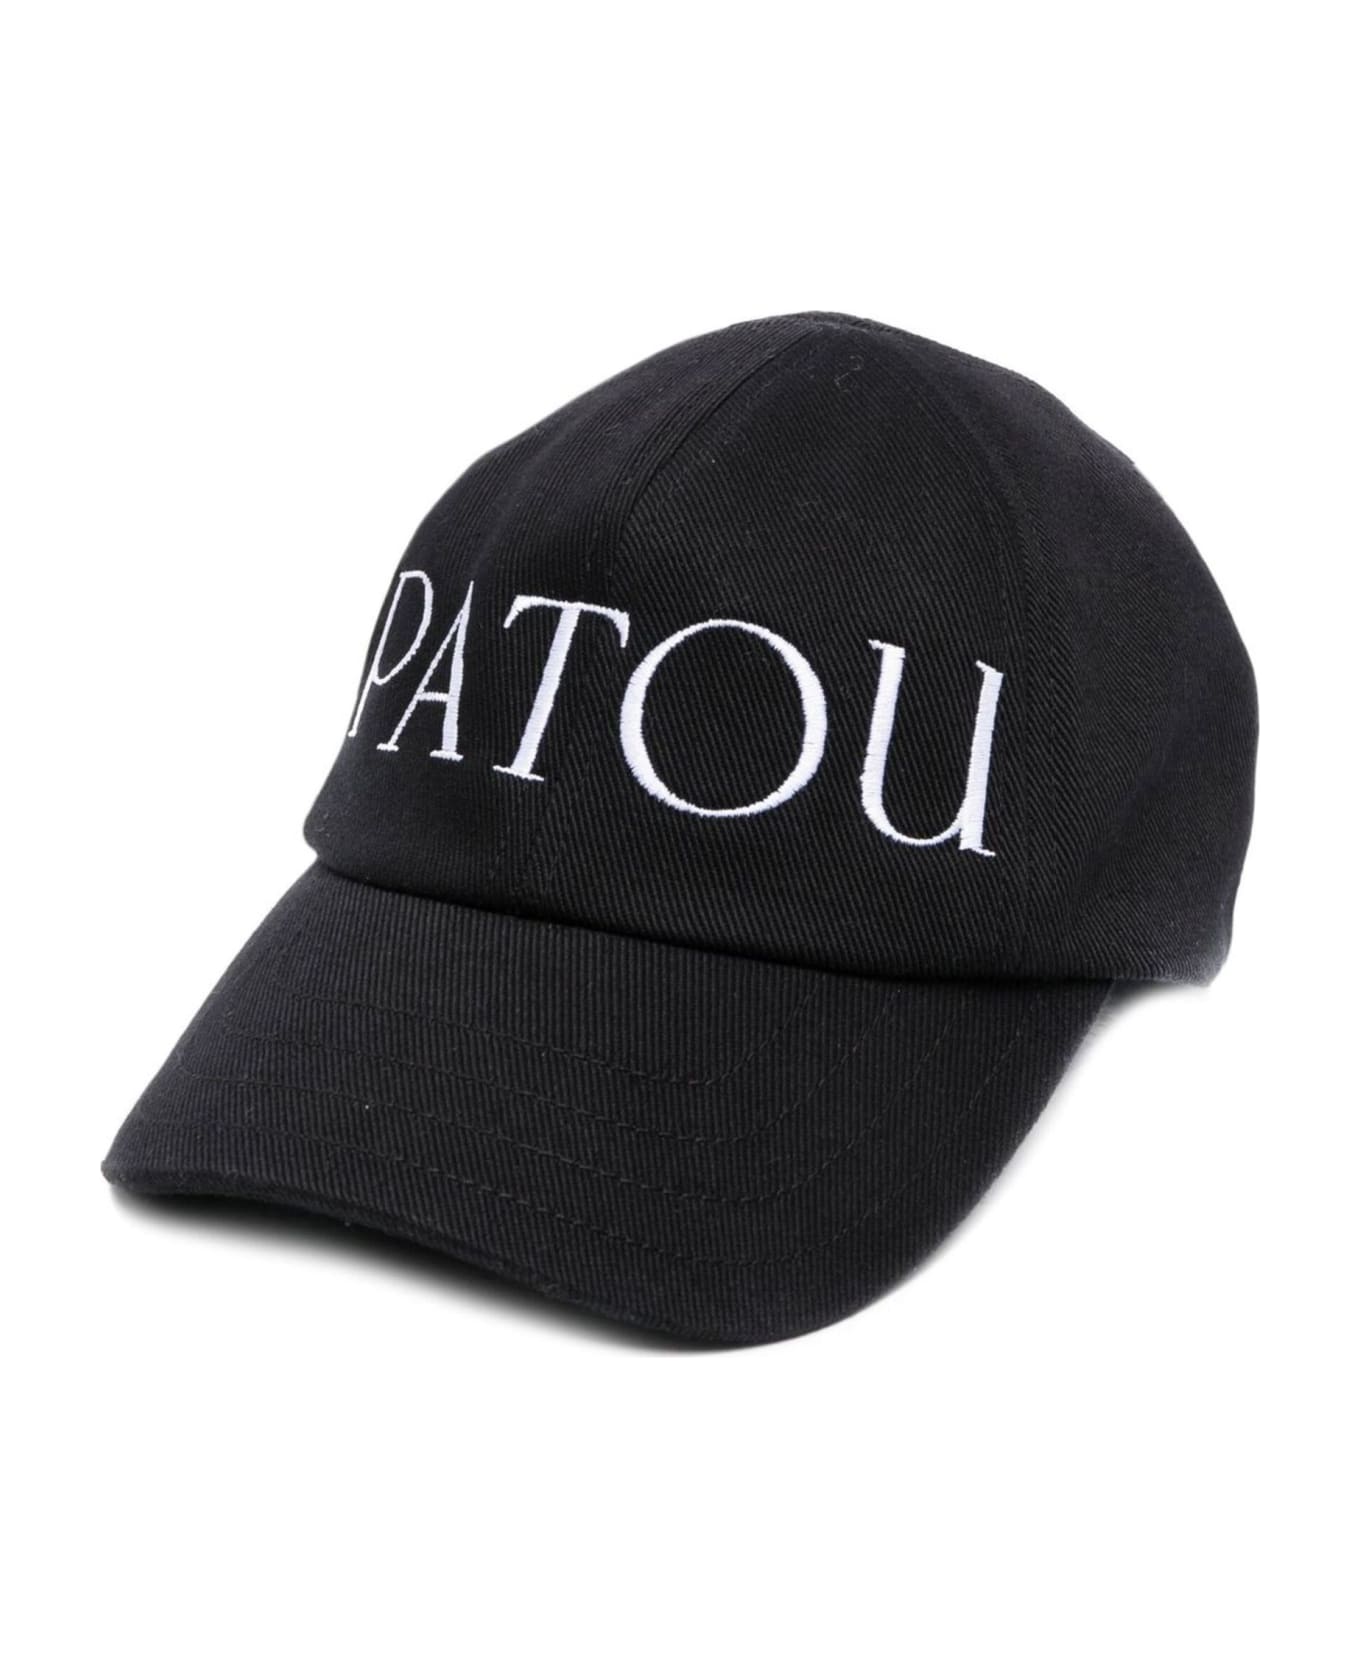 Patou Black Cotton Baseball Cap - Black